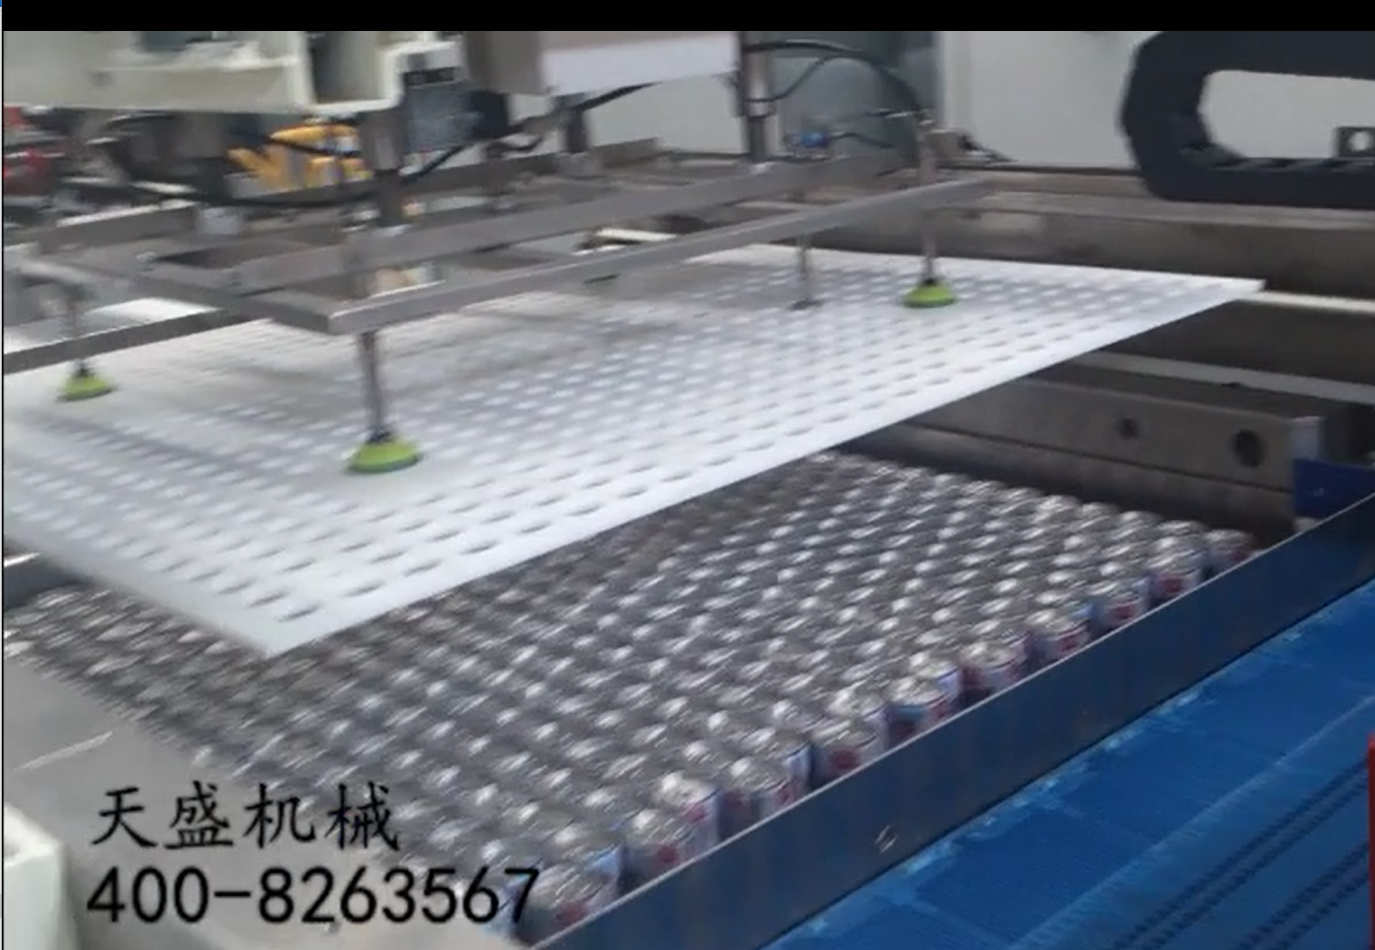 潍坊市饮料自动装卸笼设备厂家